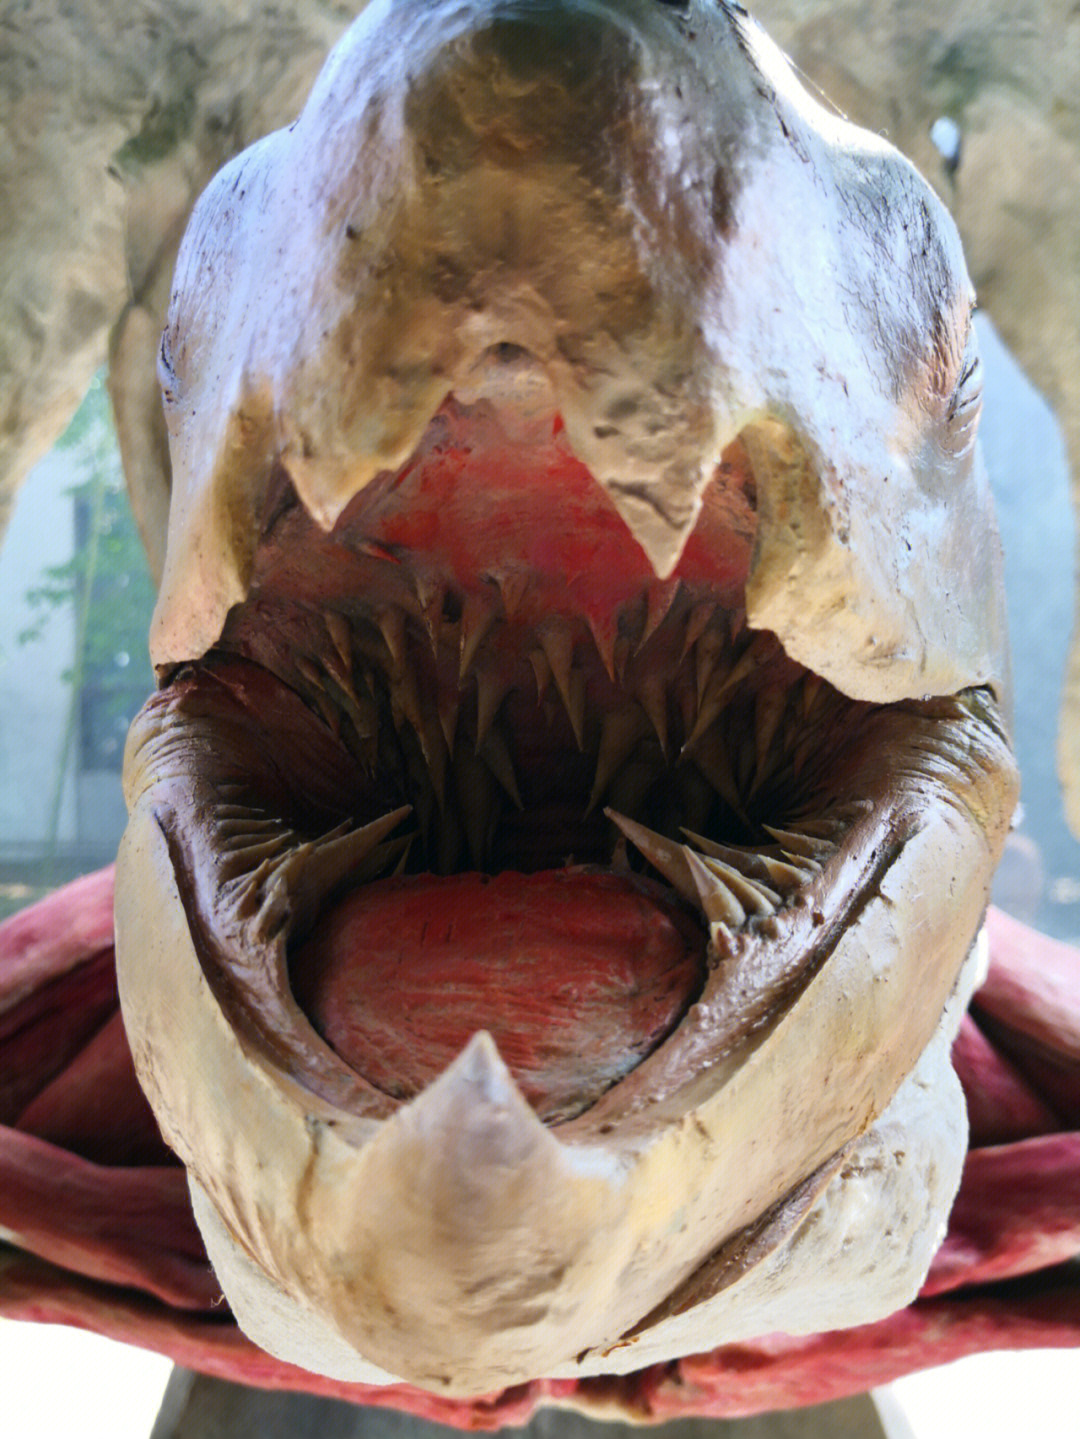 棱皮海龟口腔图片